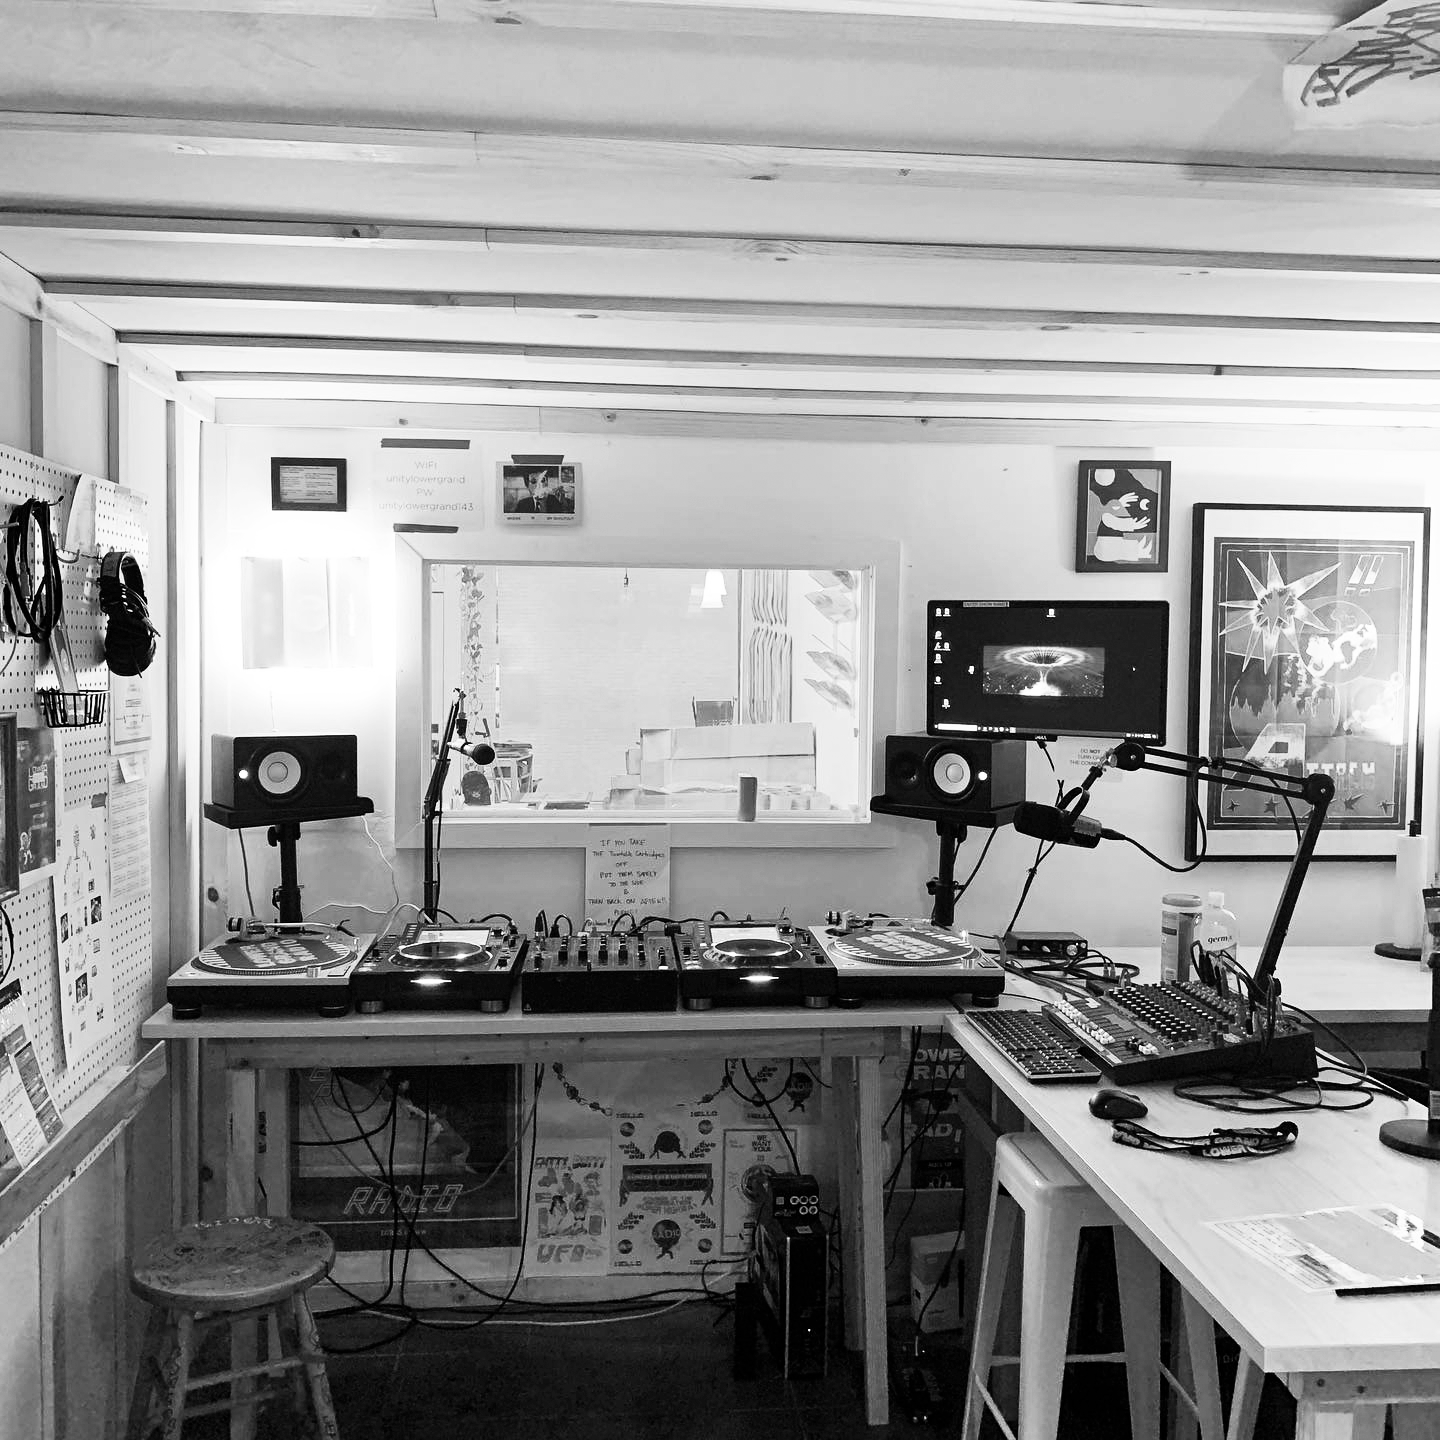 The Lower Grand Radio studio in Oakland, CA.